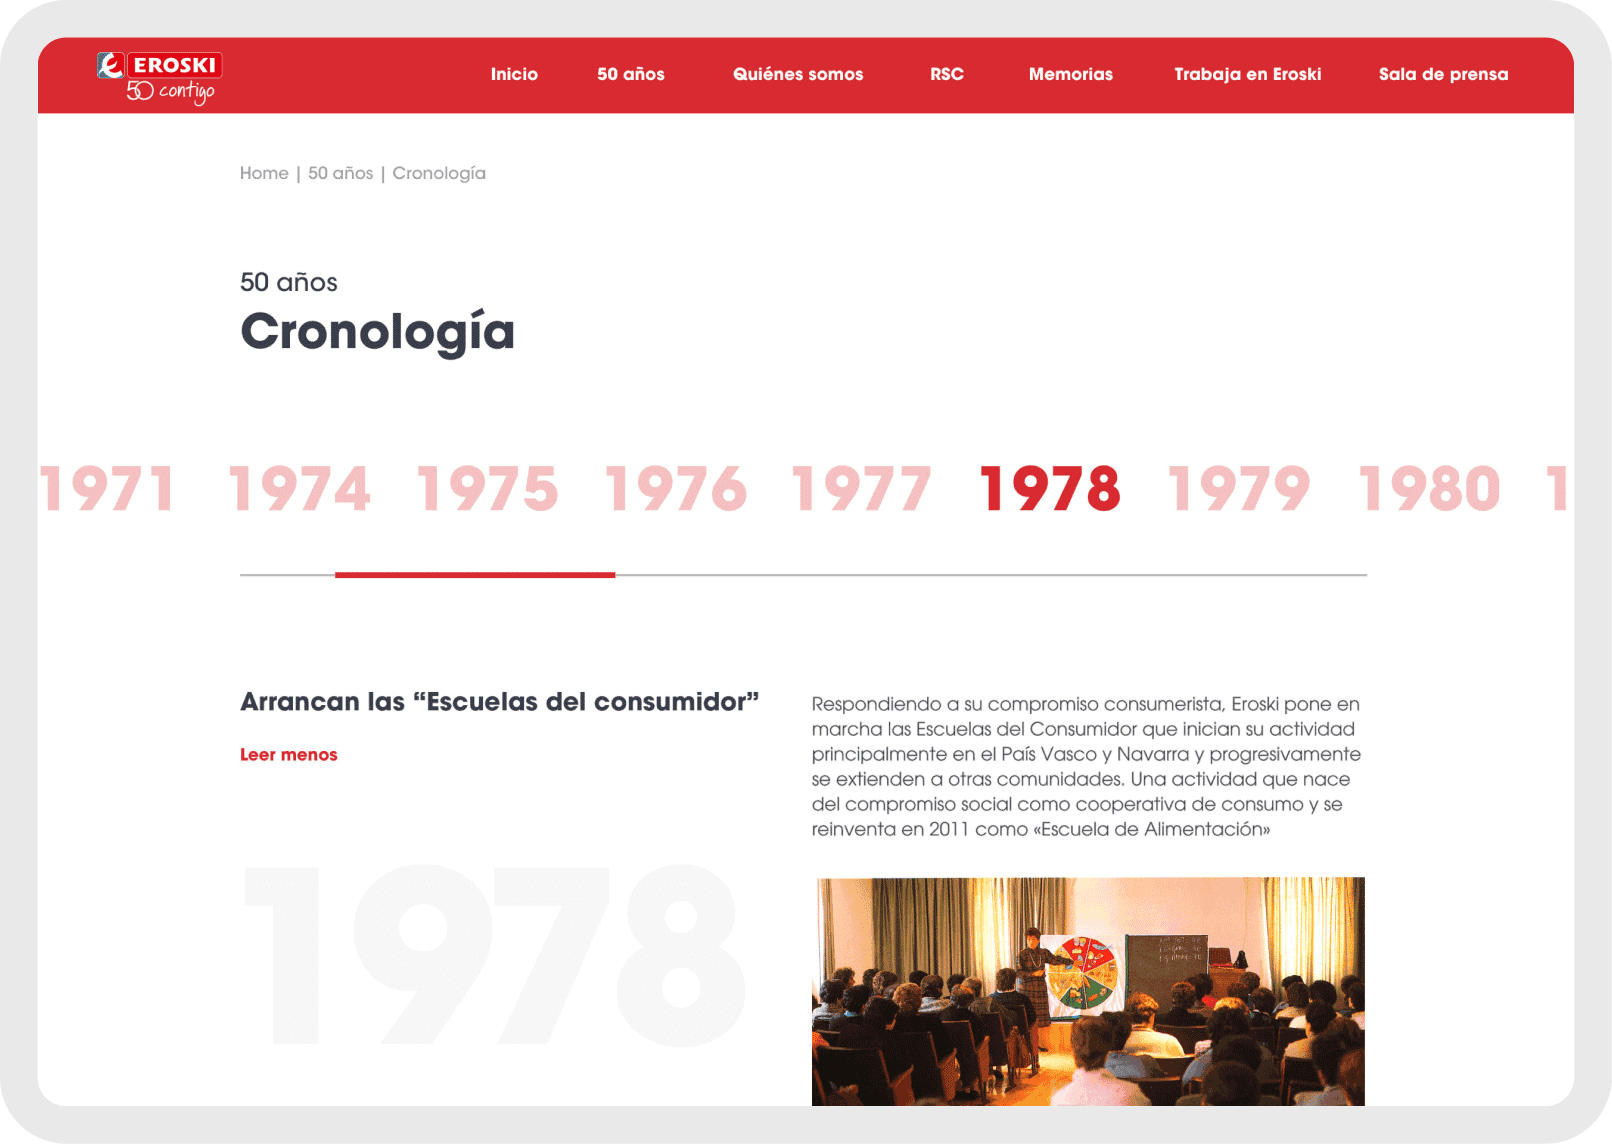 Grupo Eroski web cronología de la historia de Eroski